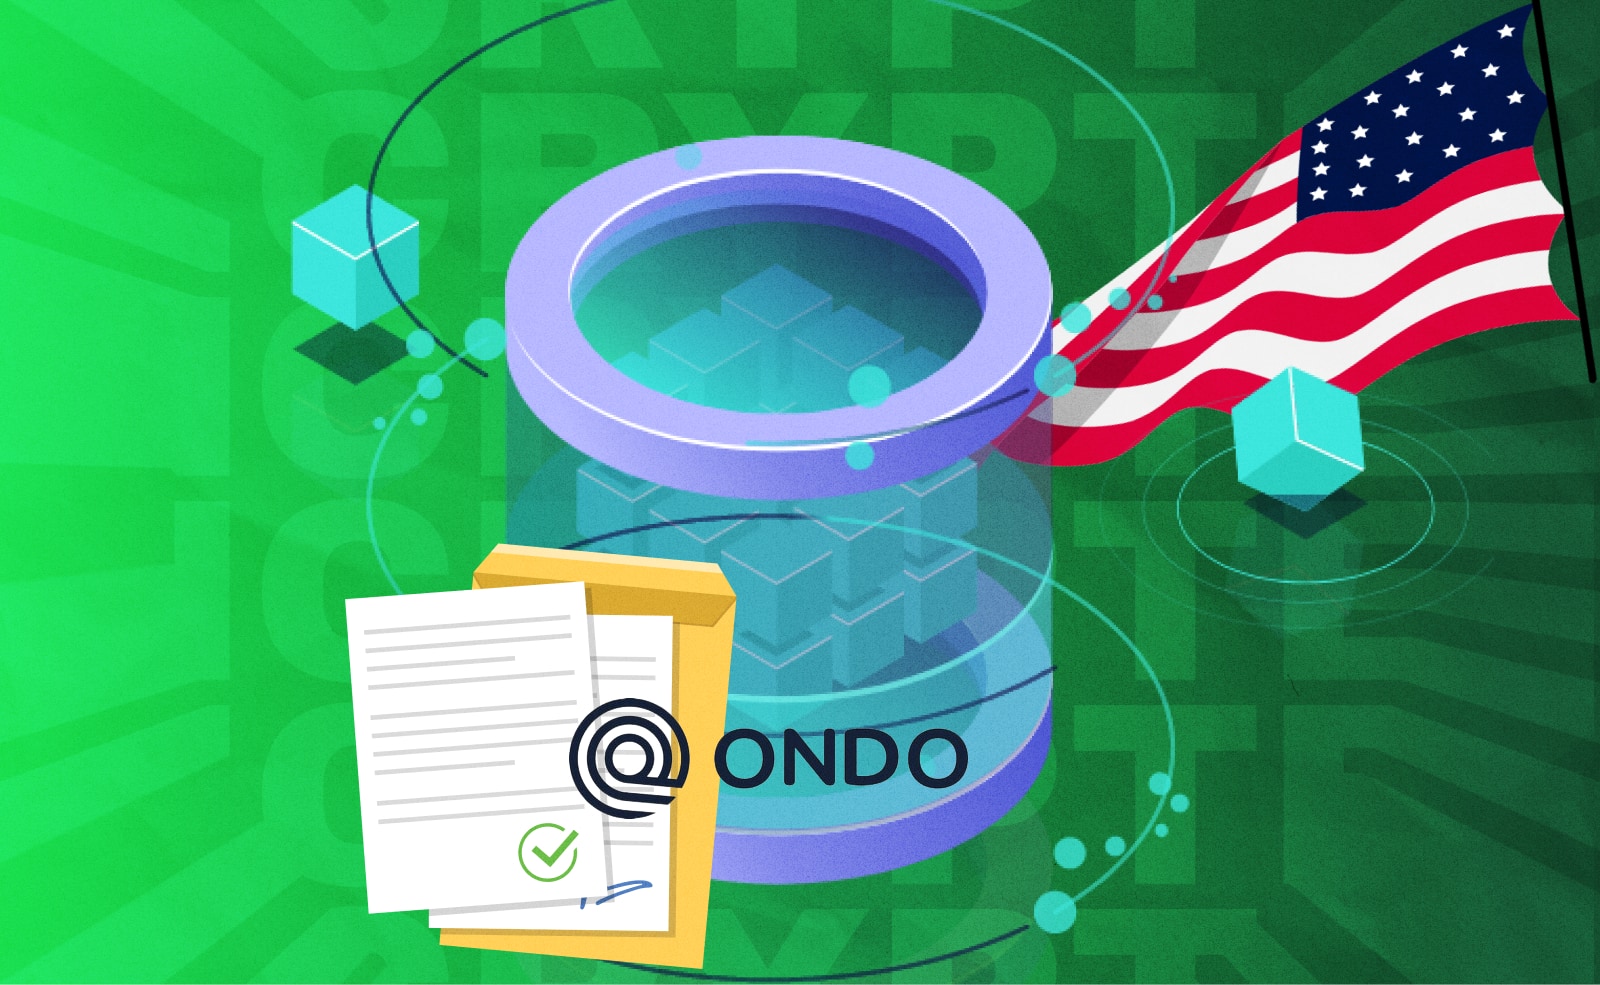 Ondo Finance открывают новый токенизированный фонд. Он предложит владельцам стейблкоинов покупать облигации и казначейские облигации США.